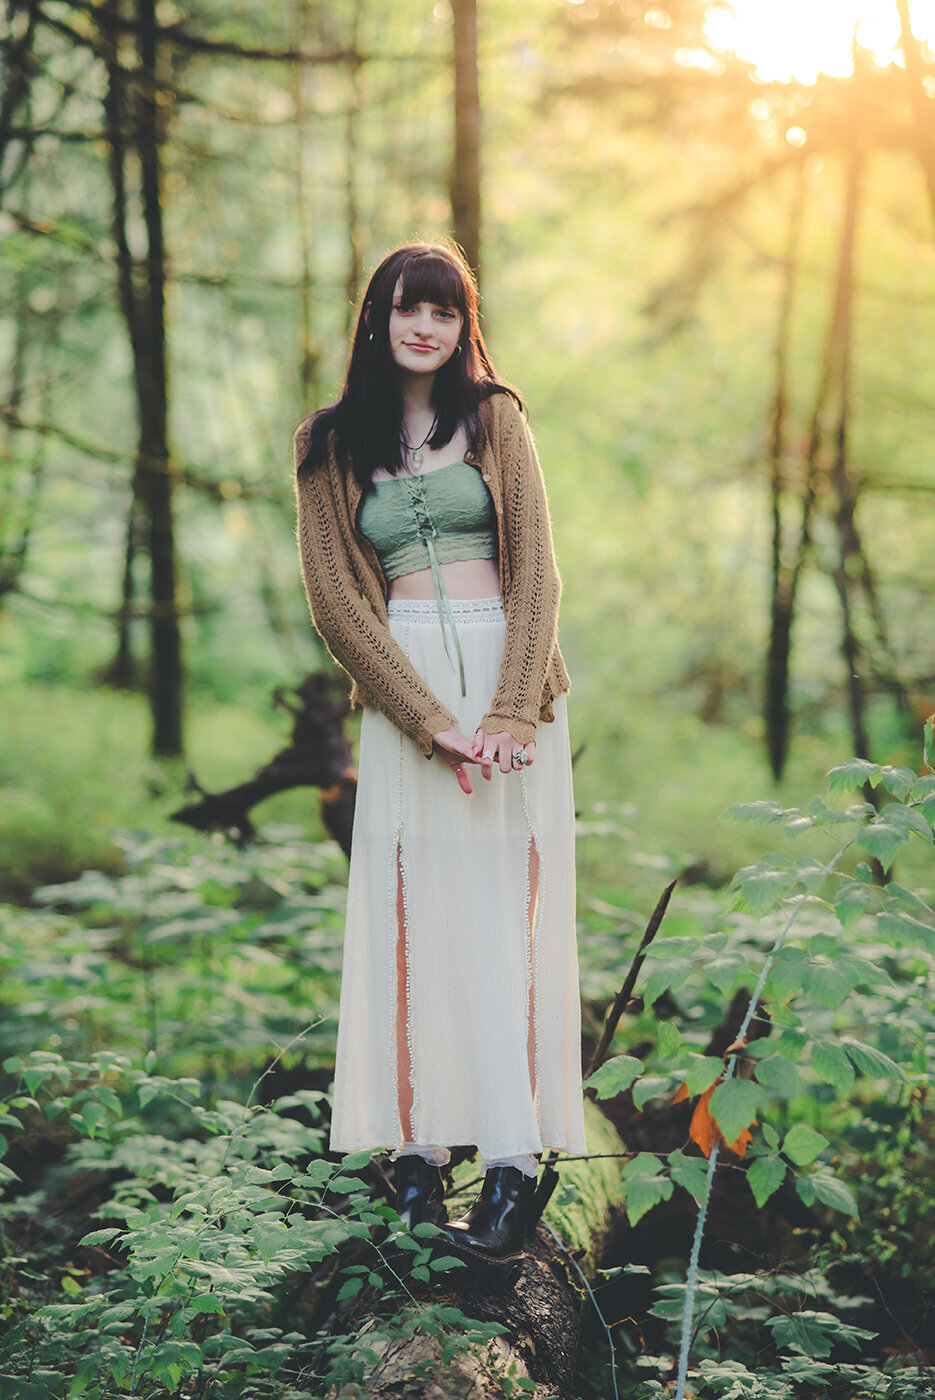 senior girl in forest